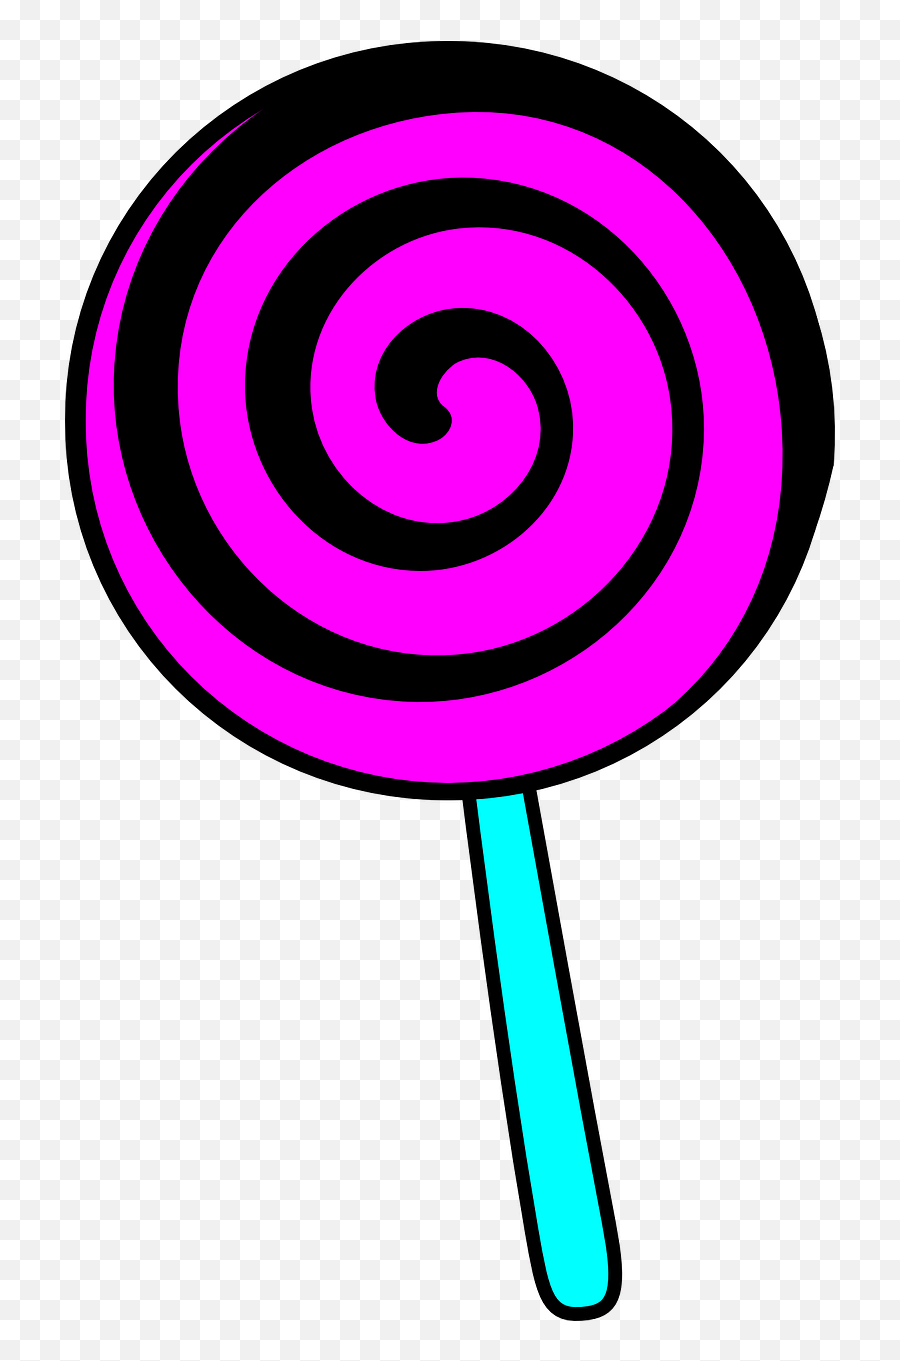 Candy Lollipop Sweets - Clip Art Of A Lollipop Png,Lolipop Png